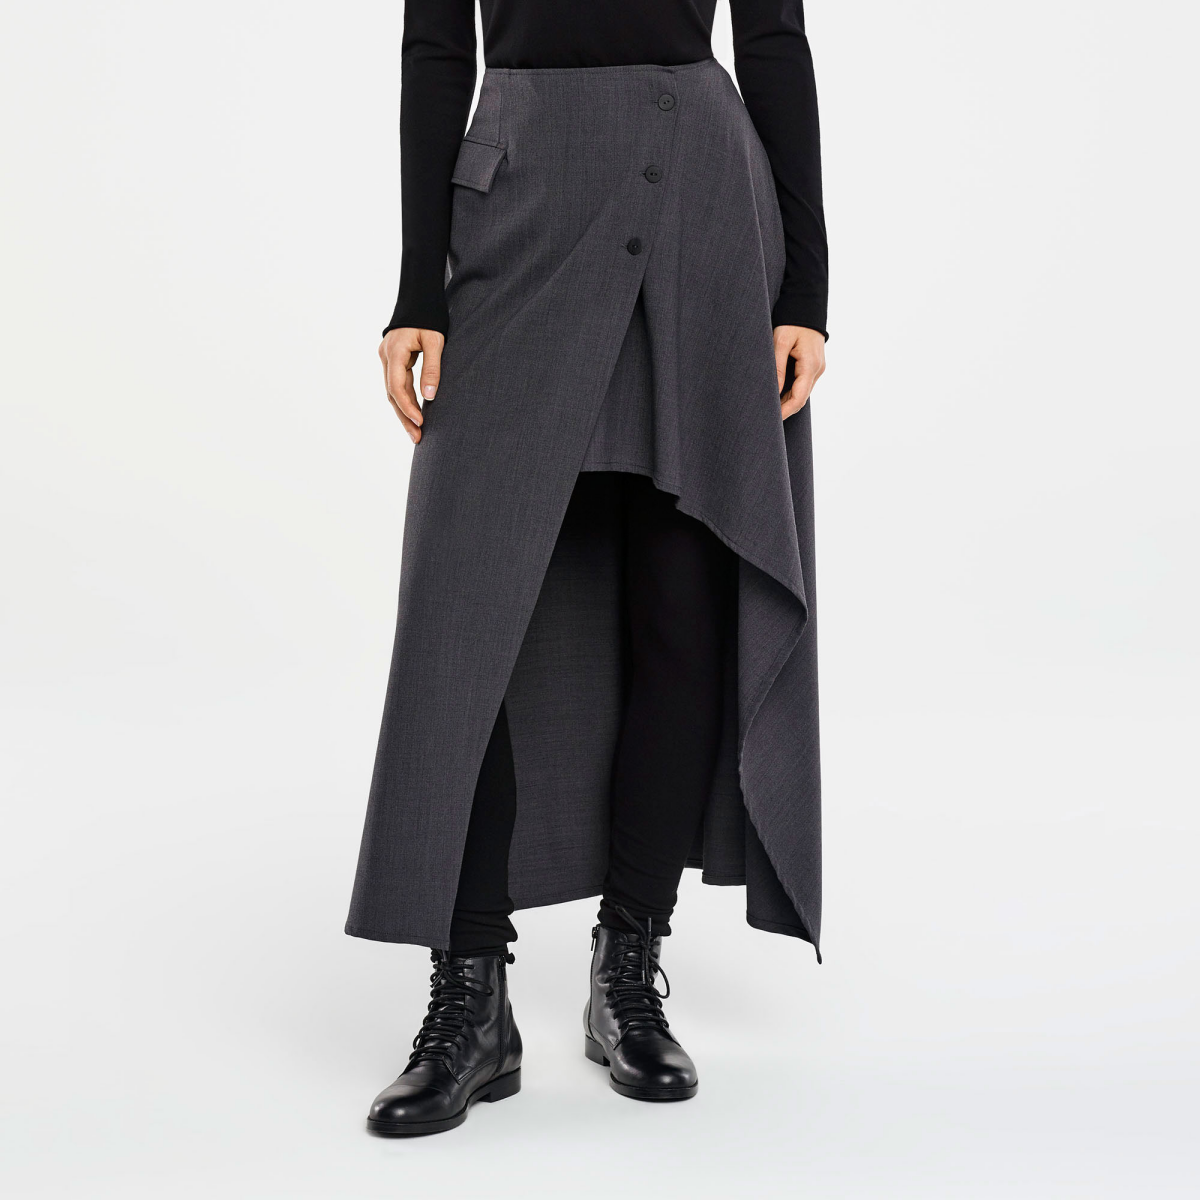 skirt styles asymmetrical skirt in gray